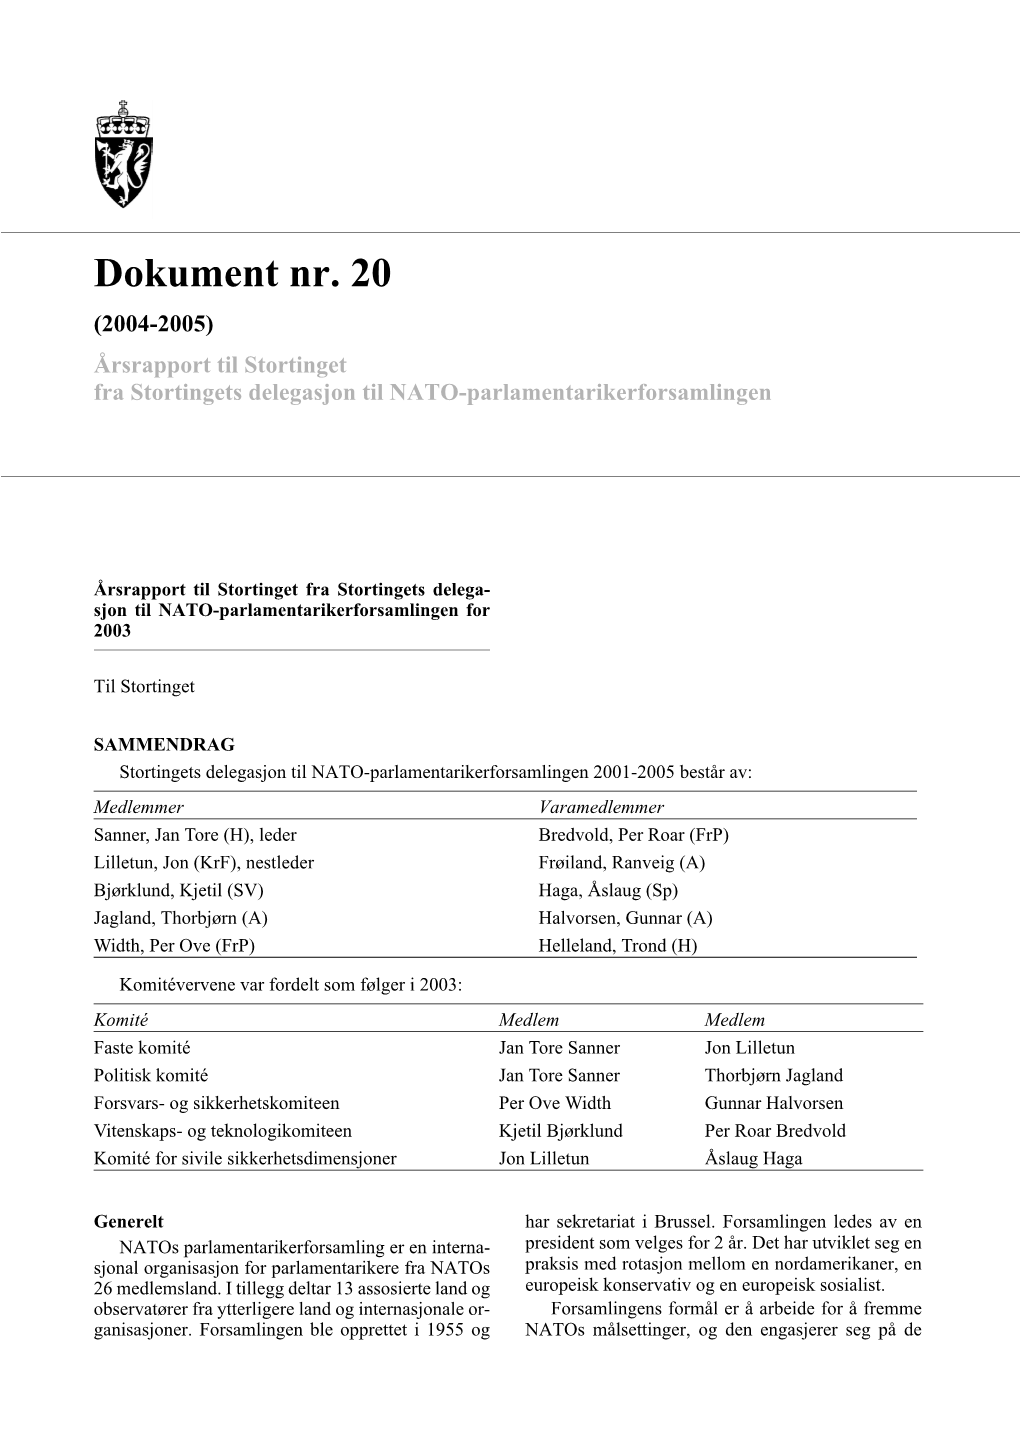 Dokument Nr. 20 (2004-2005) Årsrapport Til Stortinget Fra Stortingets Delegasjon Til NATO-Parlamentarikerforsamlingen